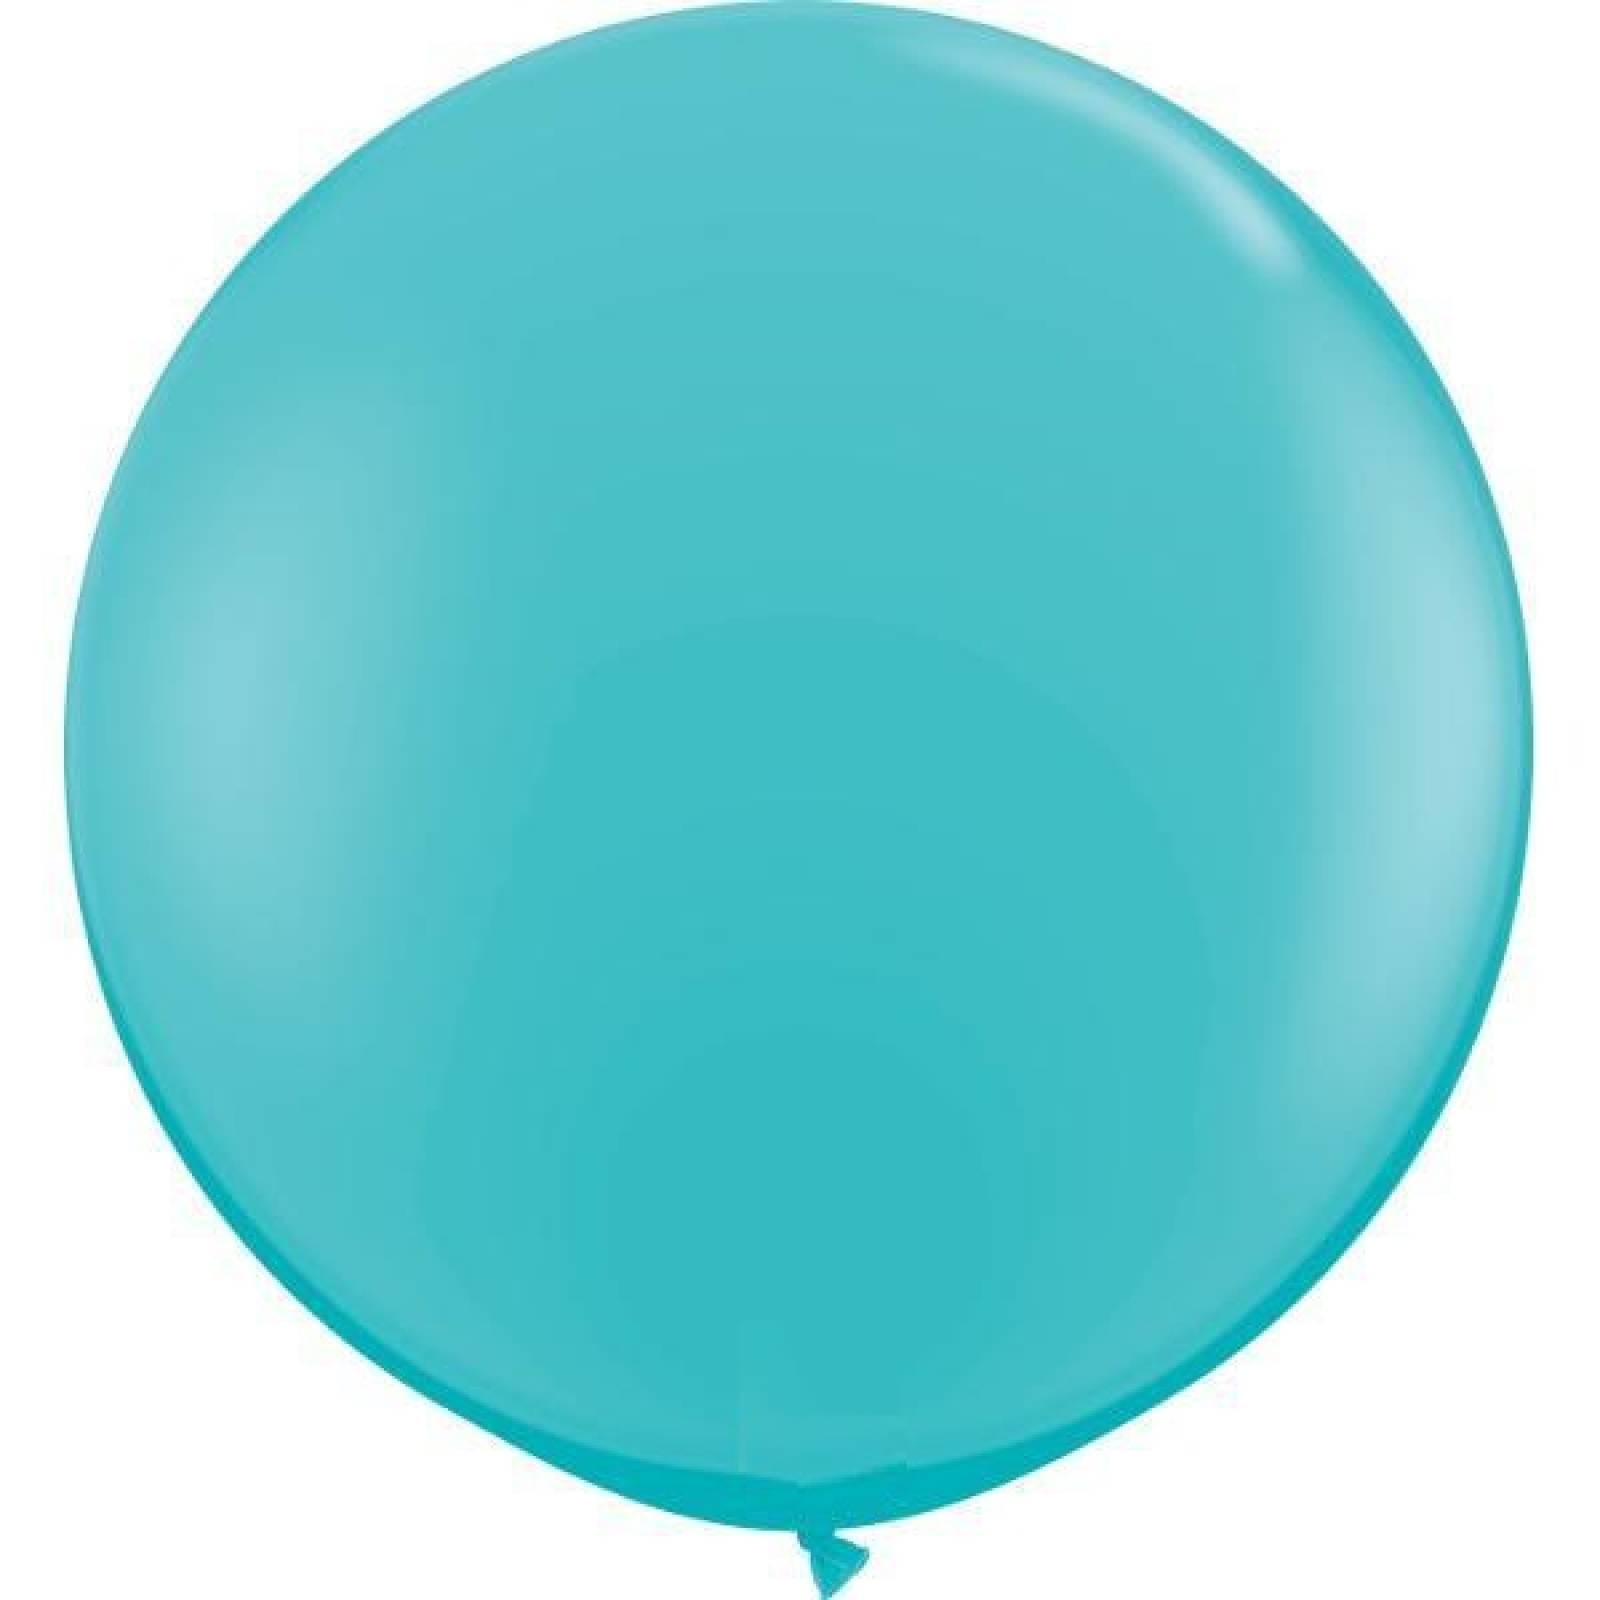 Globo gigante metálico esfera burbuja pvc de 24 pulgadas turquesa  - Sears